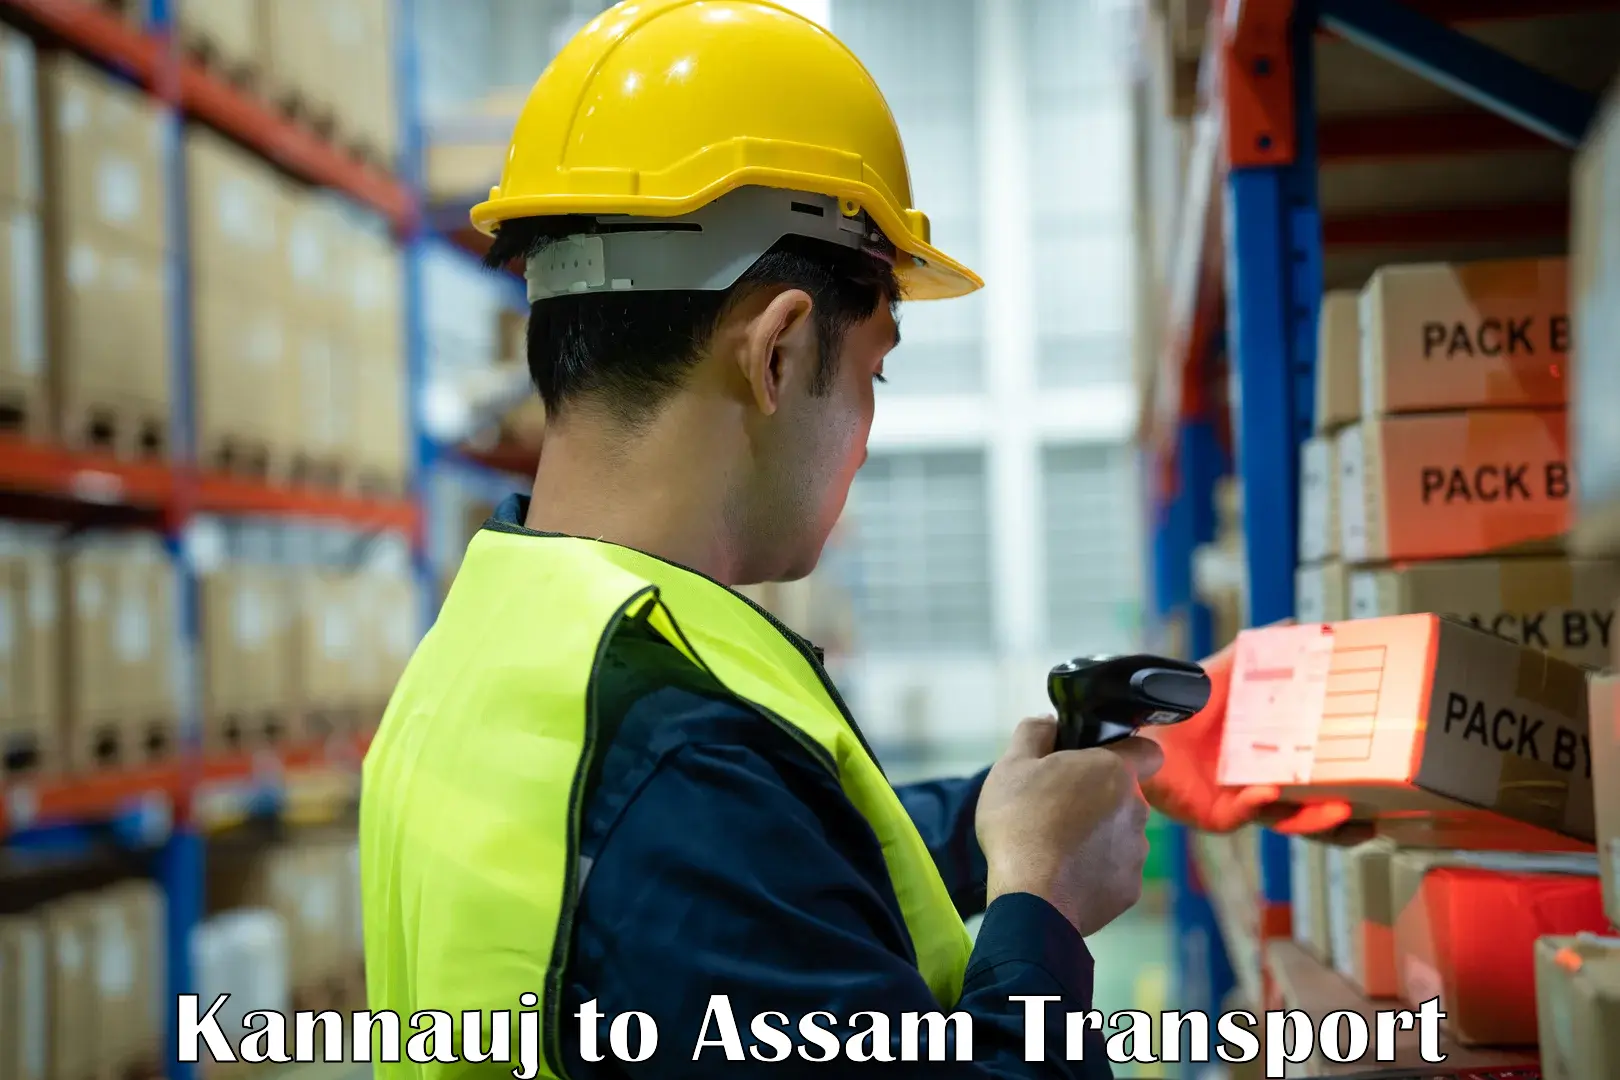 Online transport service Kannauj to Assam